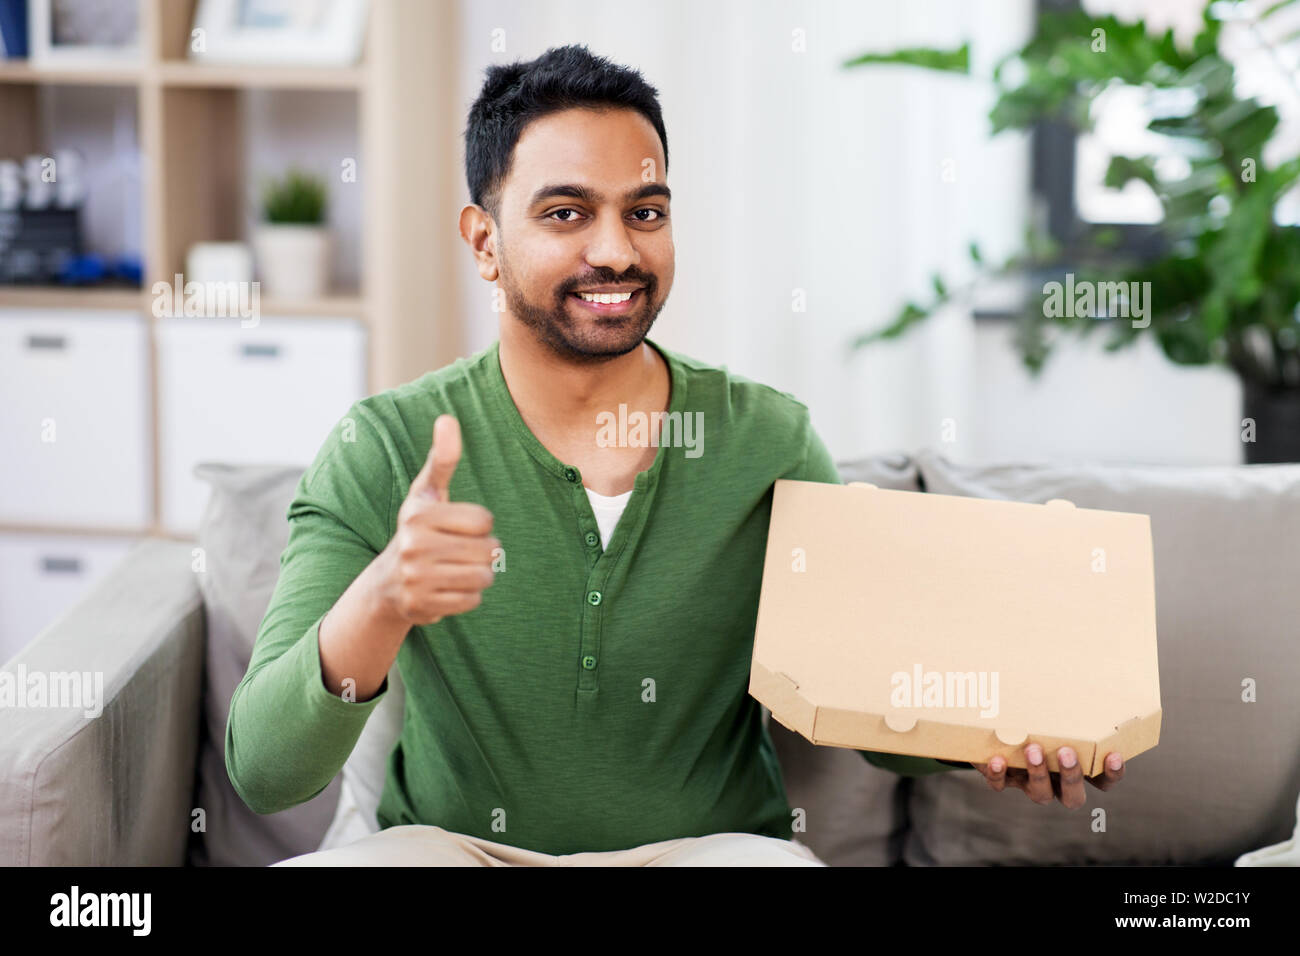 L'homme indien avec pizzas à emporter showing Thumbs up Banque D'Images